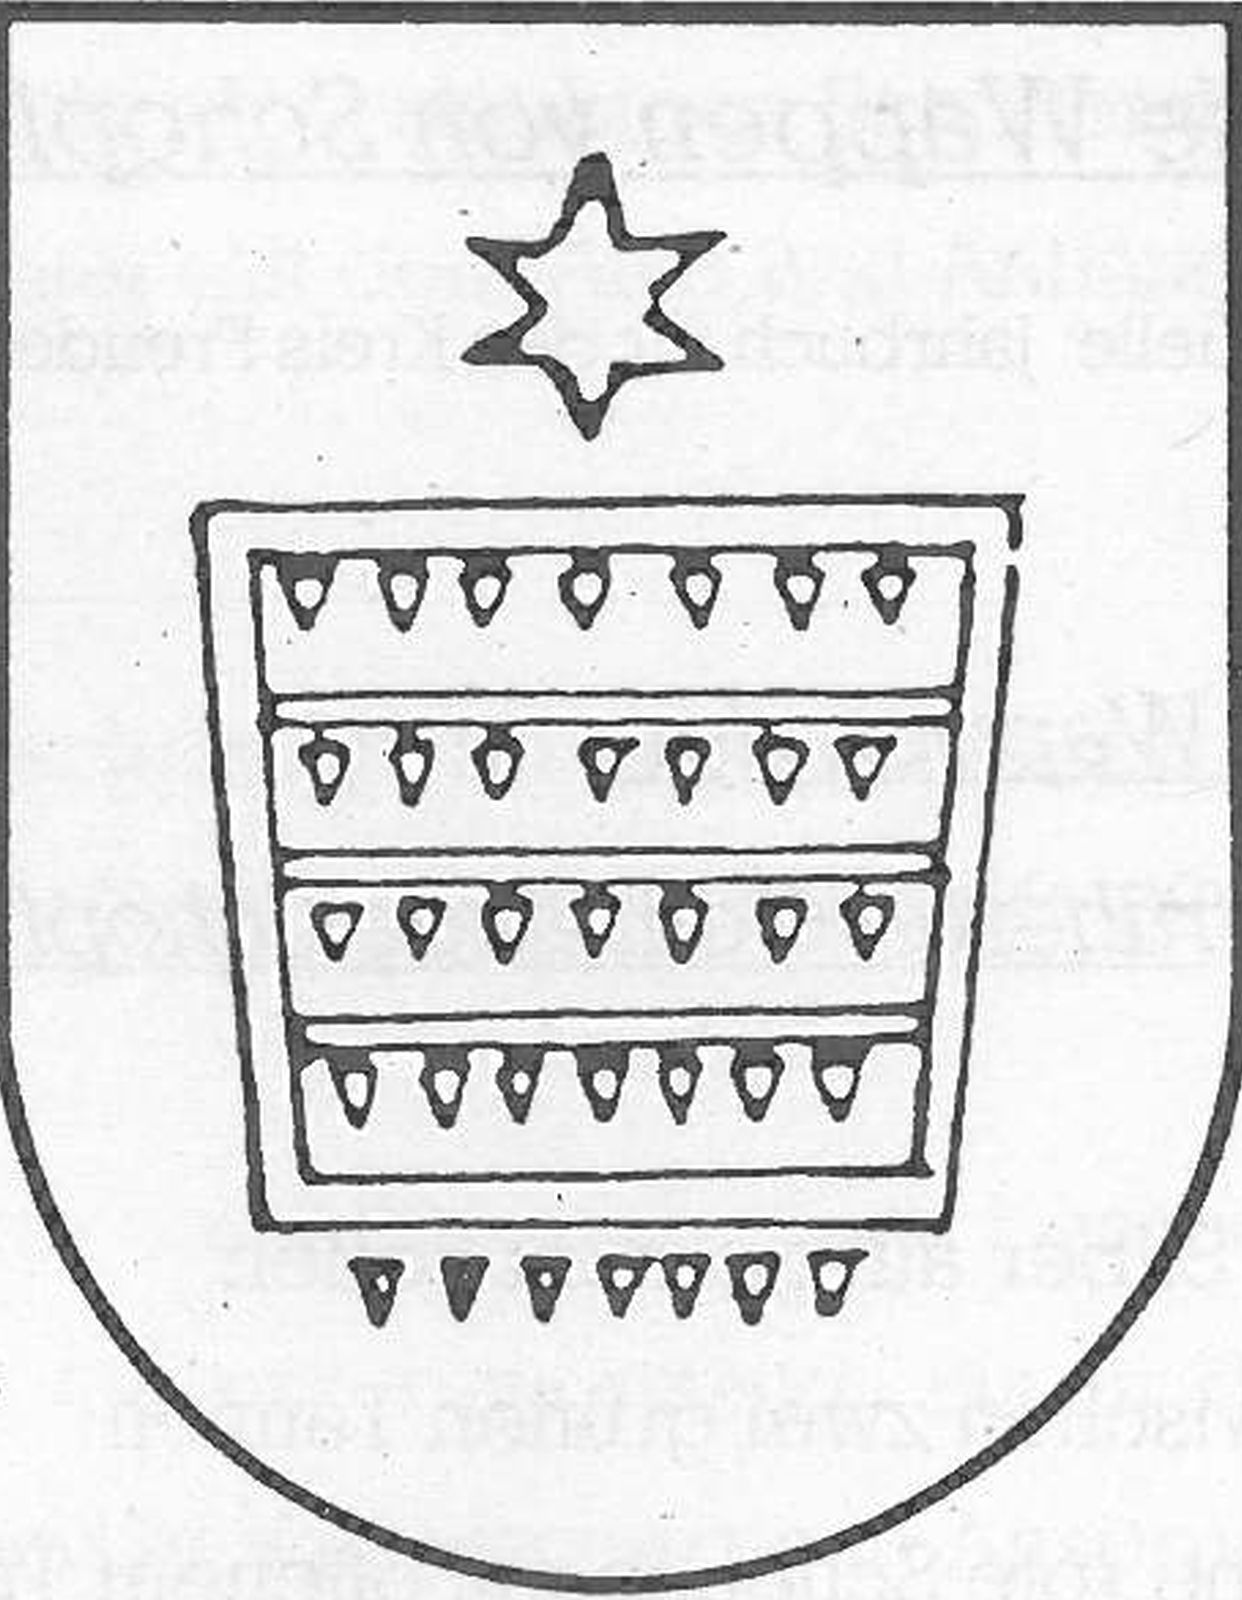  Schopflocher Skizzen Altes Wappen Oberiflingen - Bild wird mit einem klick vergrößert 